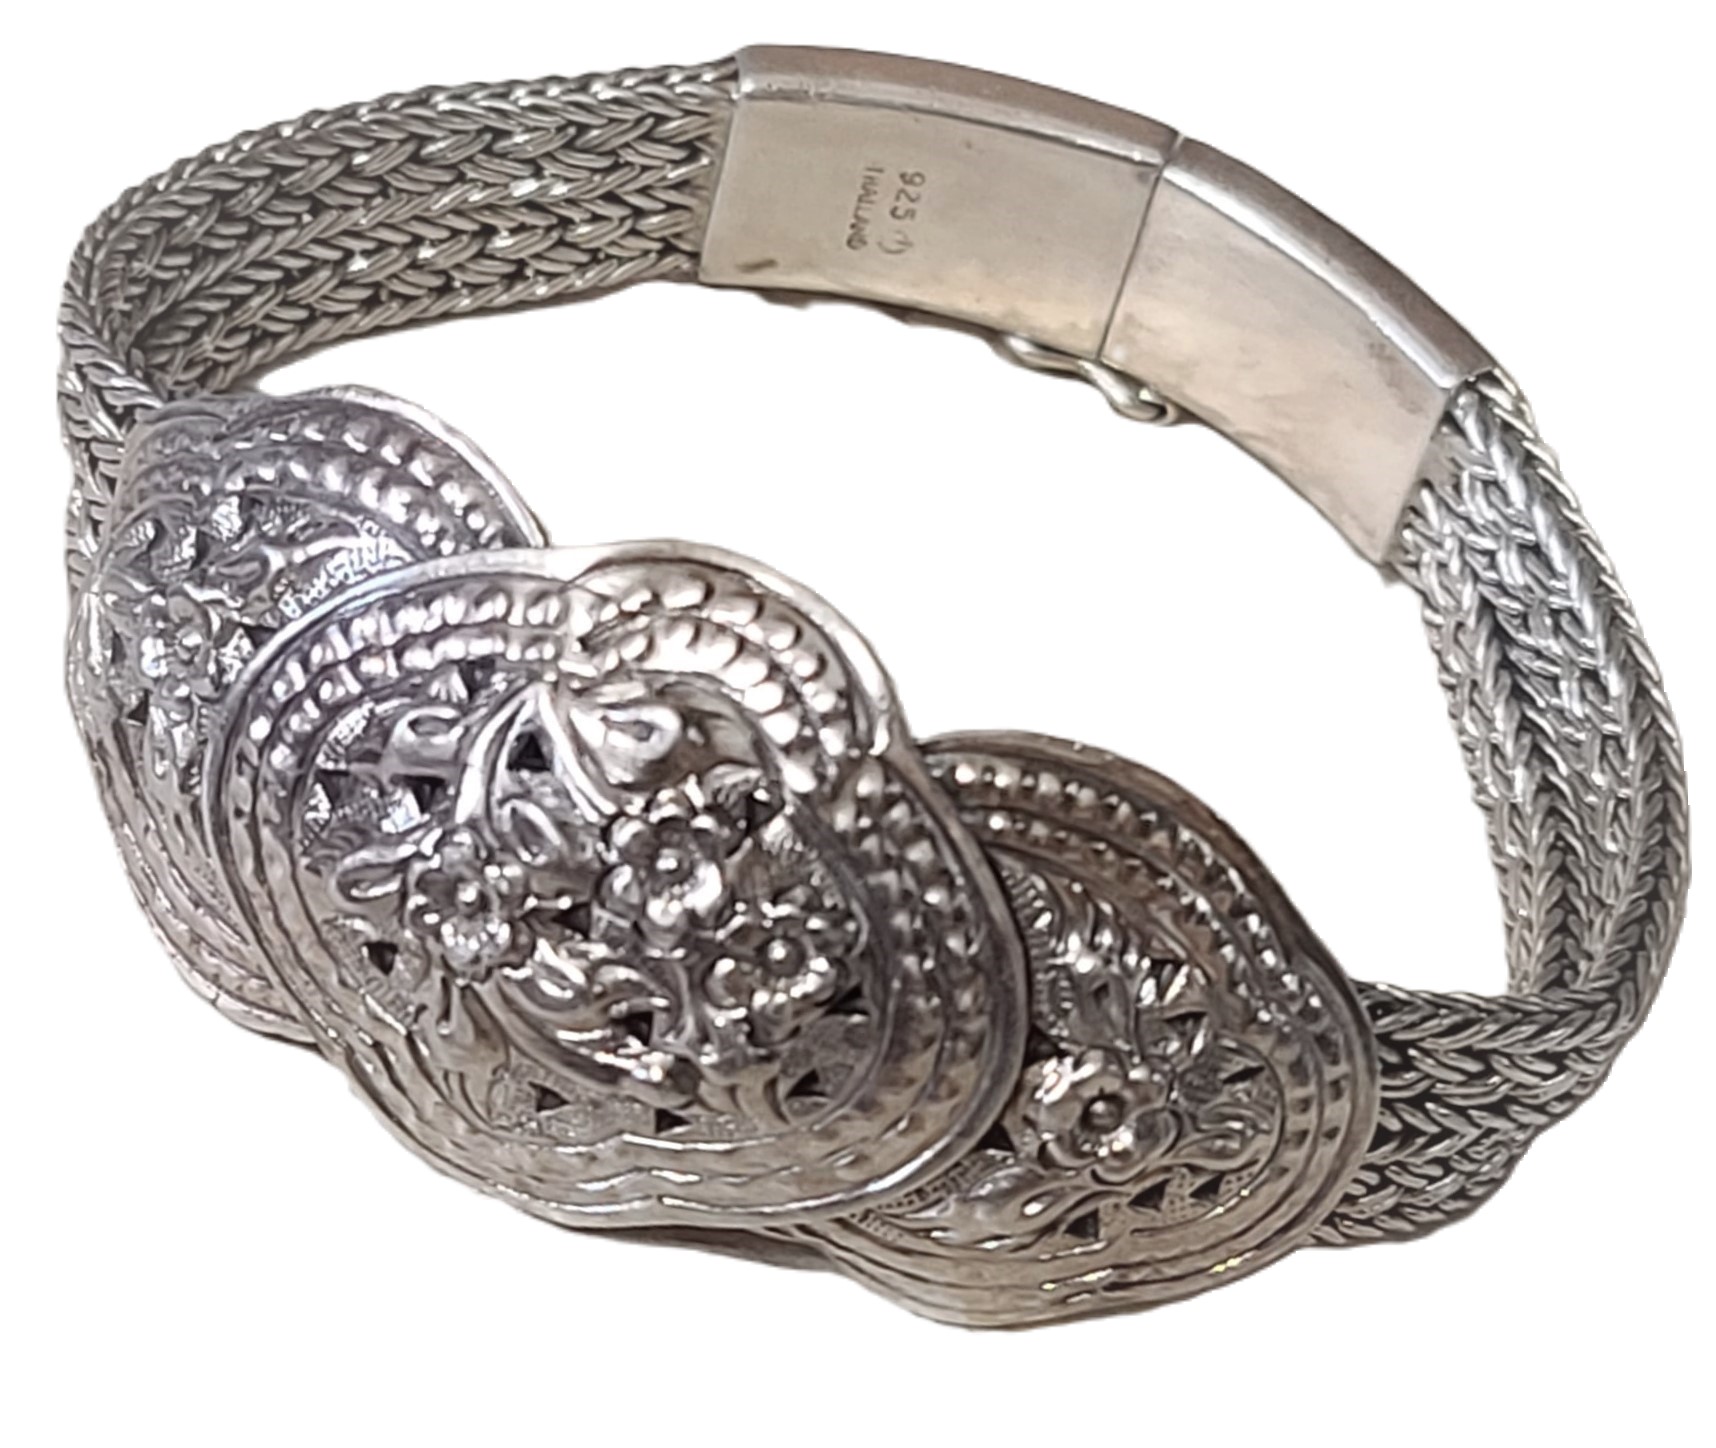 925 Sterling Silver braided two row flower motif bracelet